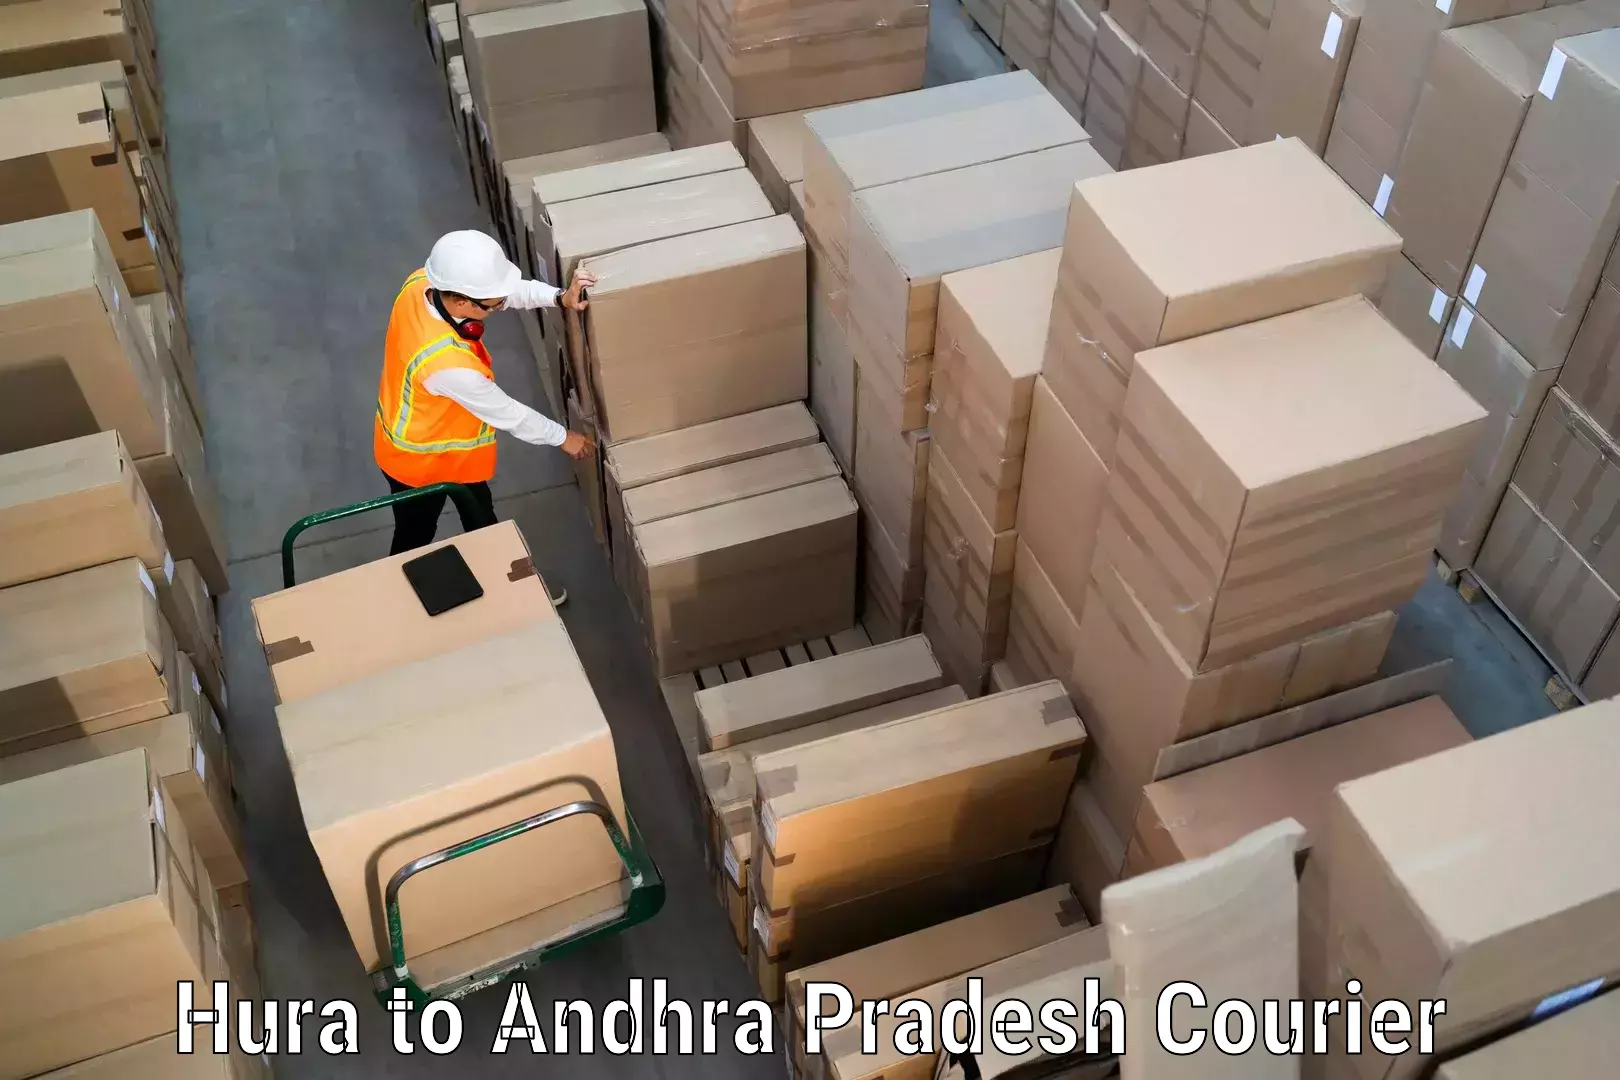 Cargo delivery service Hura to Andhra Pradesh